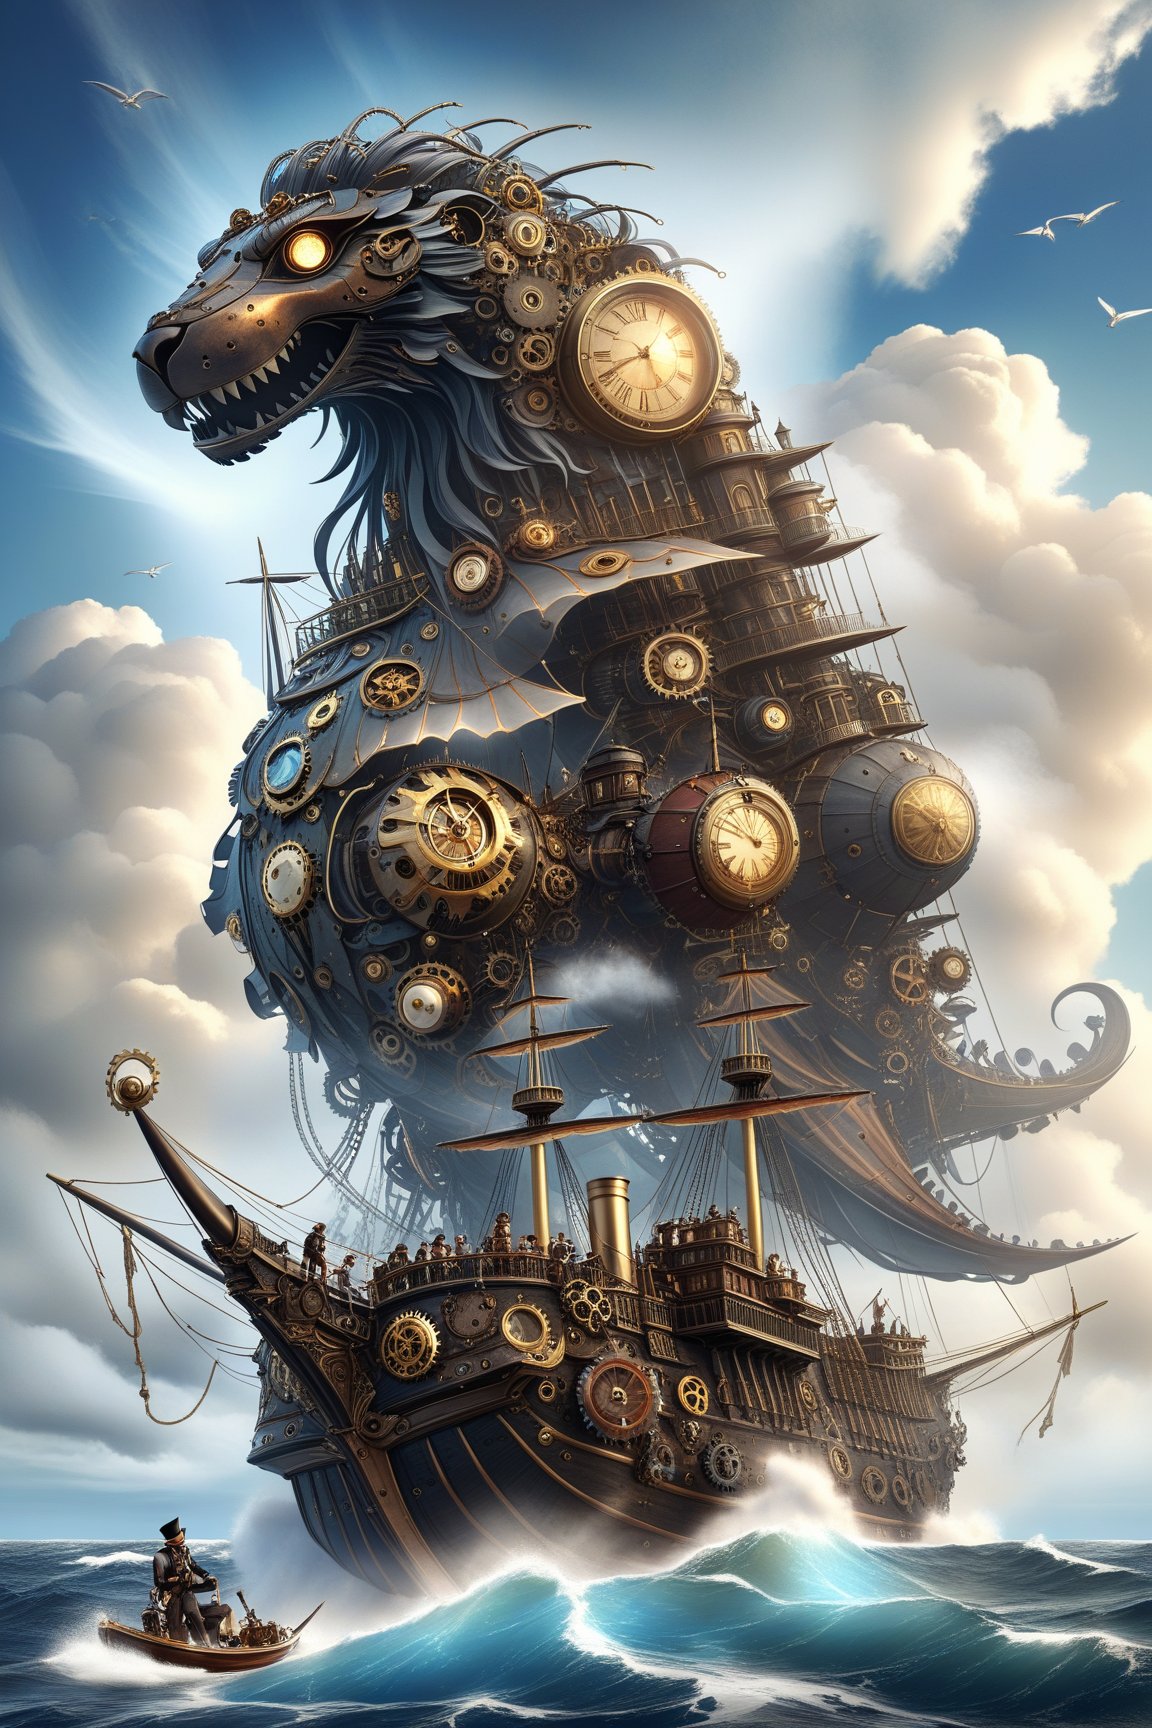 mitica y vintage escena steampunk de Un galeón gigante con casco de madera y mástiles adornados con velas de tela mecánica en tonos marrones y azules pasteles, navegando por un mar de nubes y estrellas.,Mechanical,DonMSt34mPXL